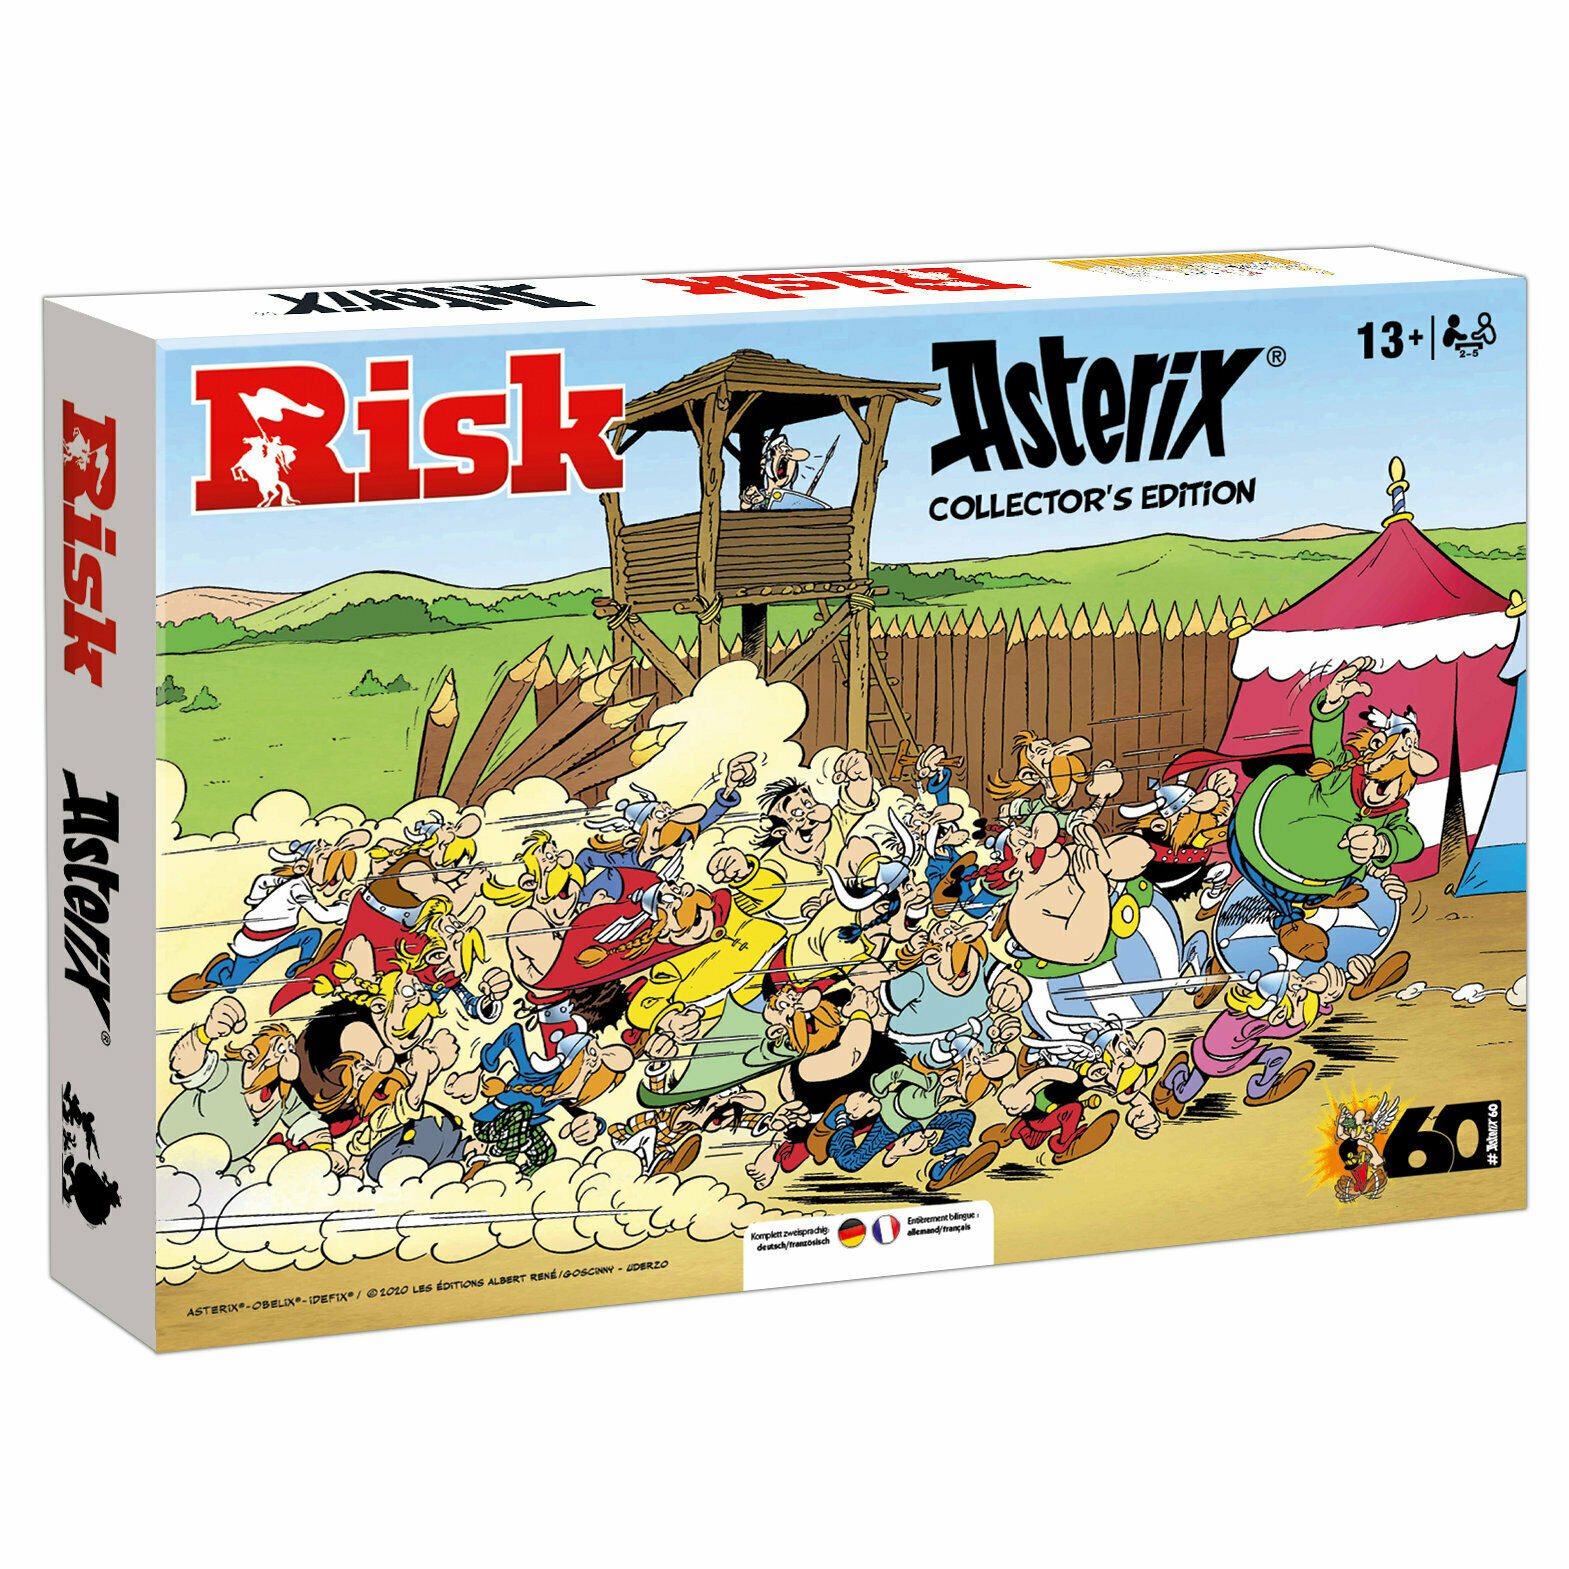 Bild zu Risiko Asterix und Obelix limitierte Collector’s Edition für 44,99€ (Vergleich: 59,95€)